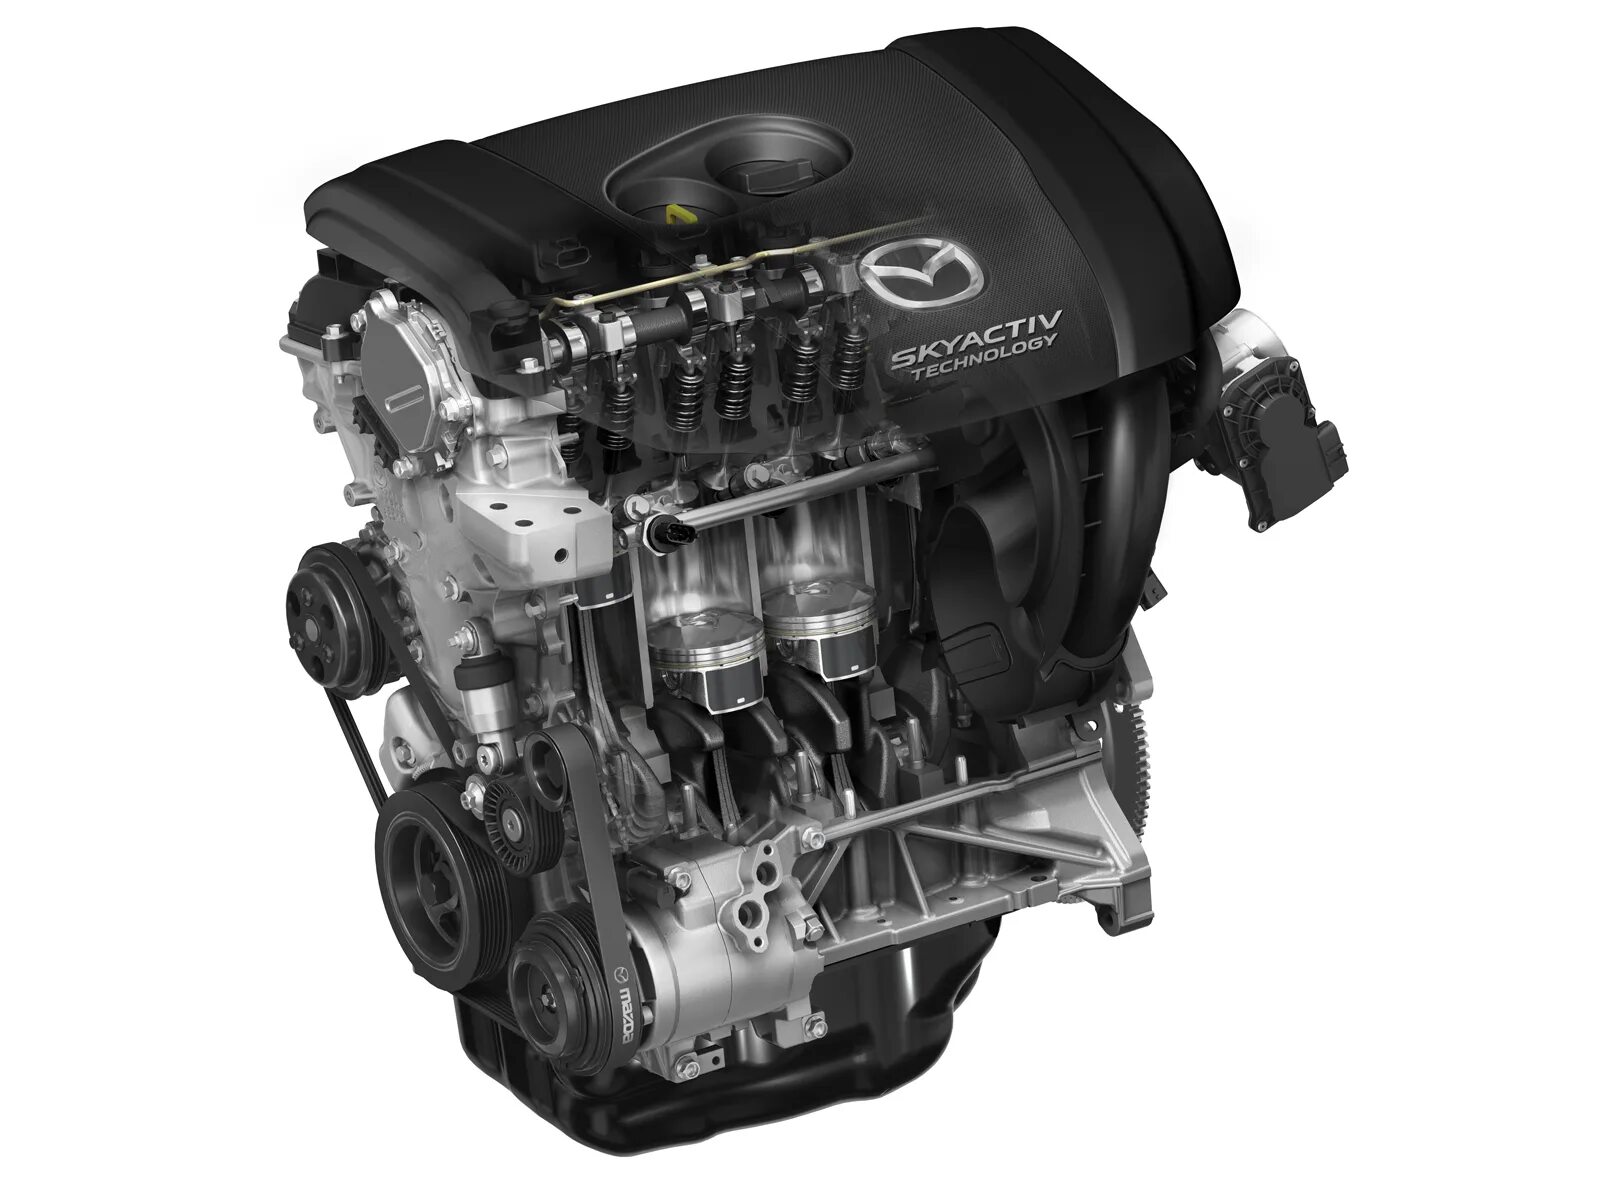 Купить 2 литровый двигатель. Мотор скайактив 2.5. Двигатель Mazda CX-5 2.0 SKYACTIV. Двигатель Мазда SKYACTIV 2.0. Двигатель Мазда 6 2.5 скайактив.